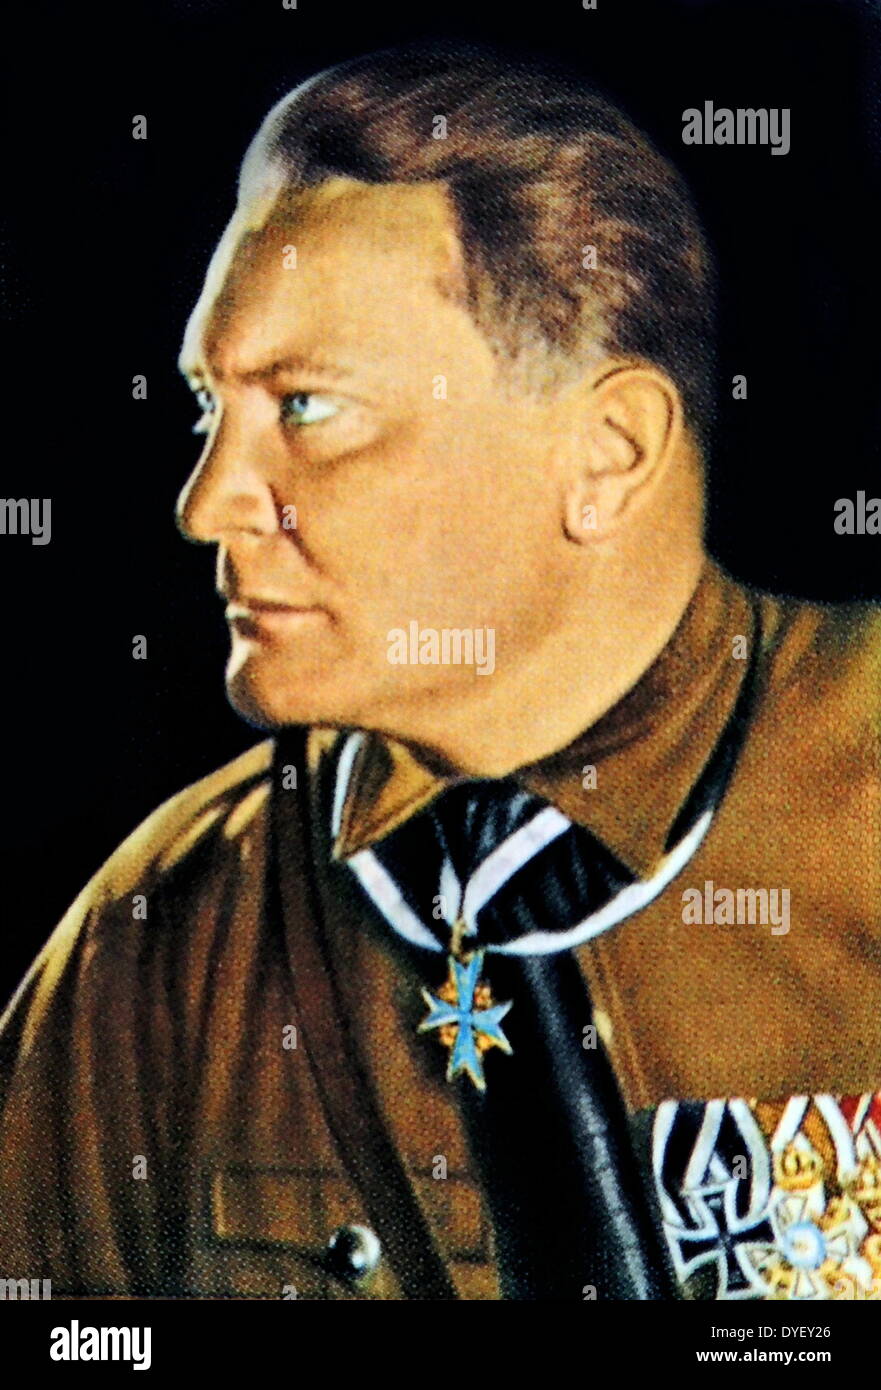 Hermann Göring, Oberbefehlshaber der Luftwaffe, Präsident des Reichstags, Ministerpräsident von Preußen, Bevollmächtigter für die Umsetzung der vier Jahr (wirtschaftlichen) Plan und designierter Nachfolger Hitlers. ca. 1933 Stockfoto